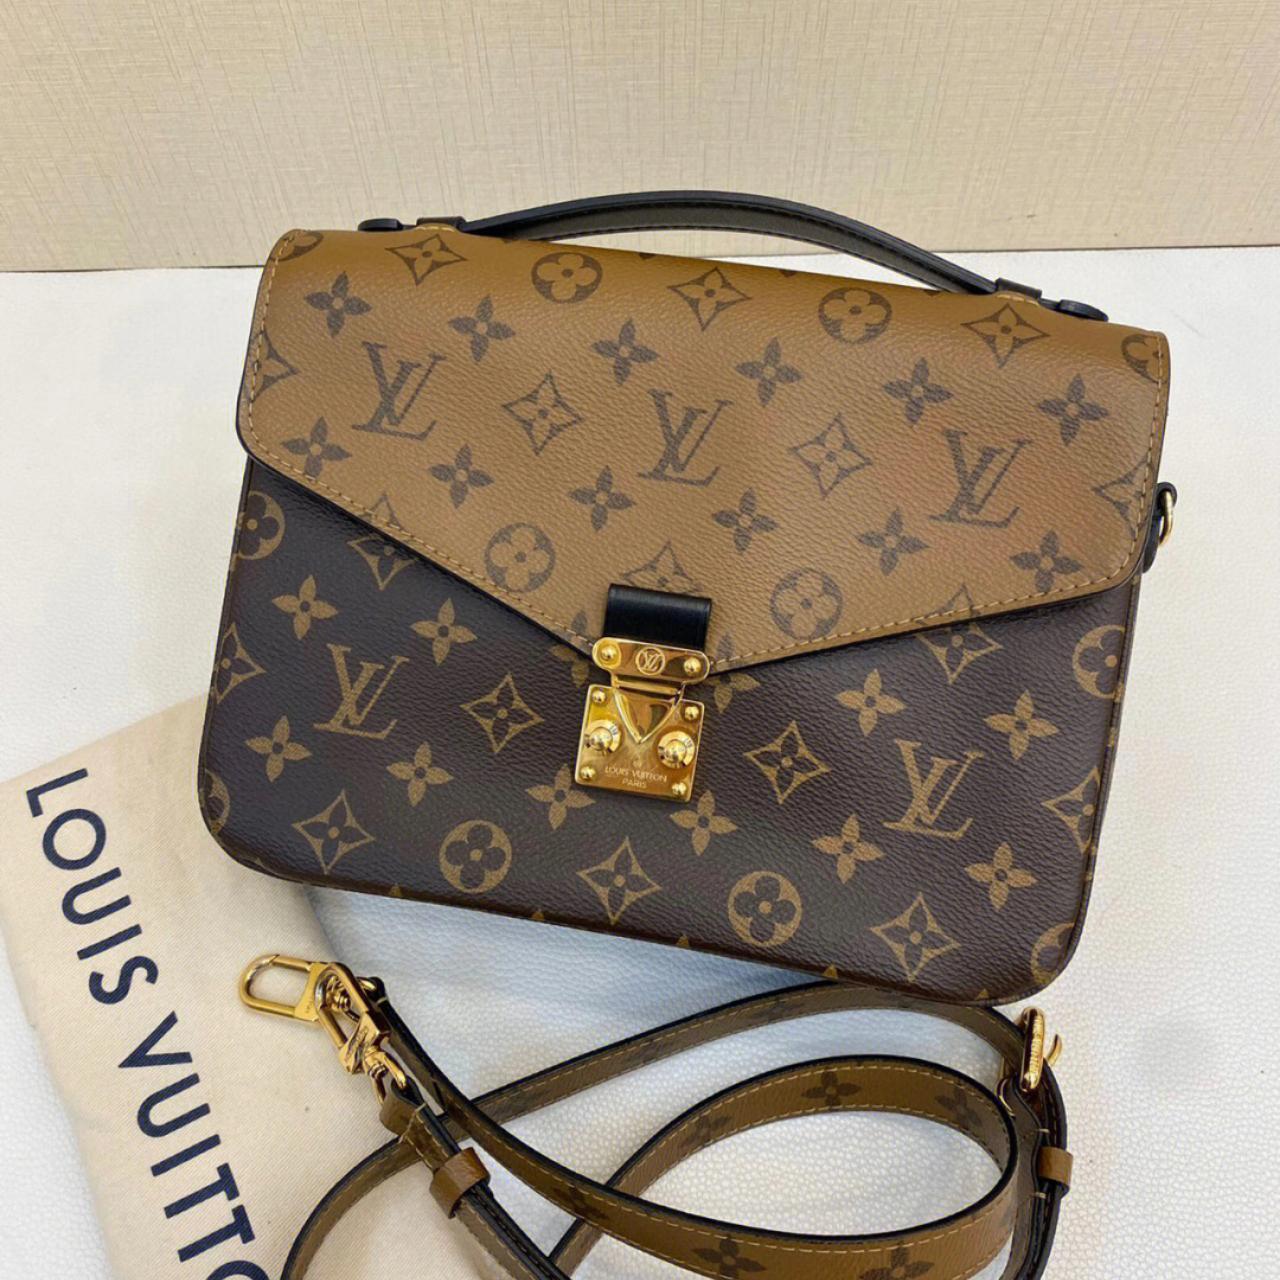 Louis Vuitton messenger bag Brand new, no wear and... - Depop